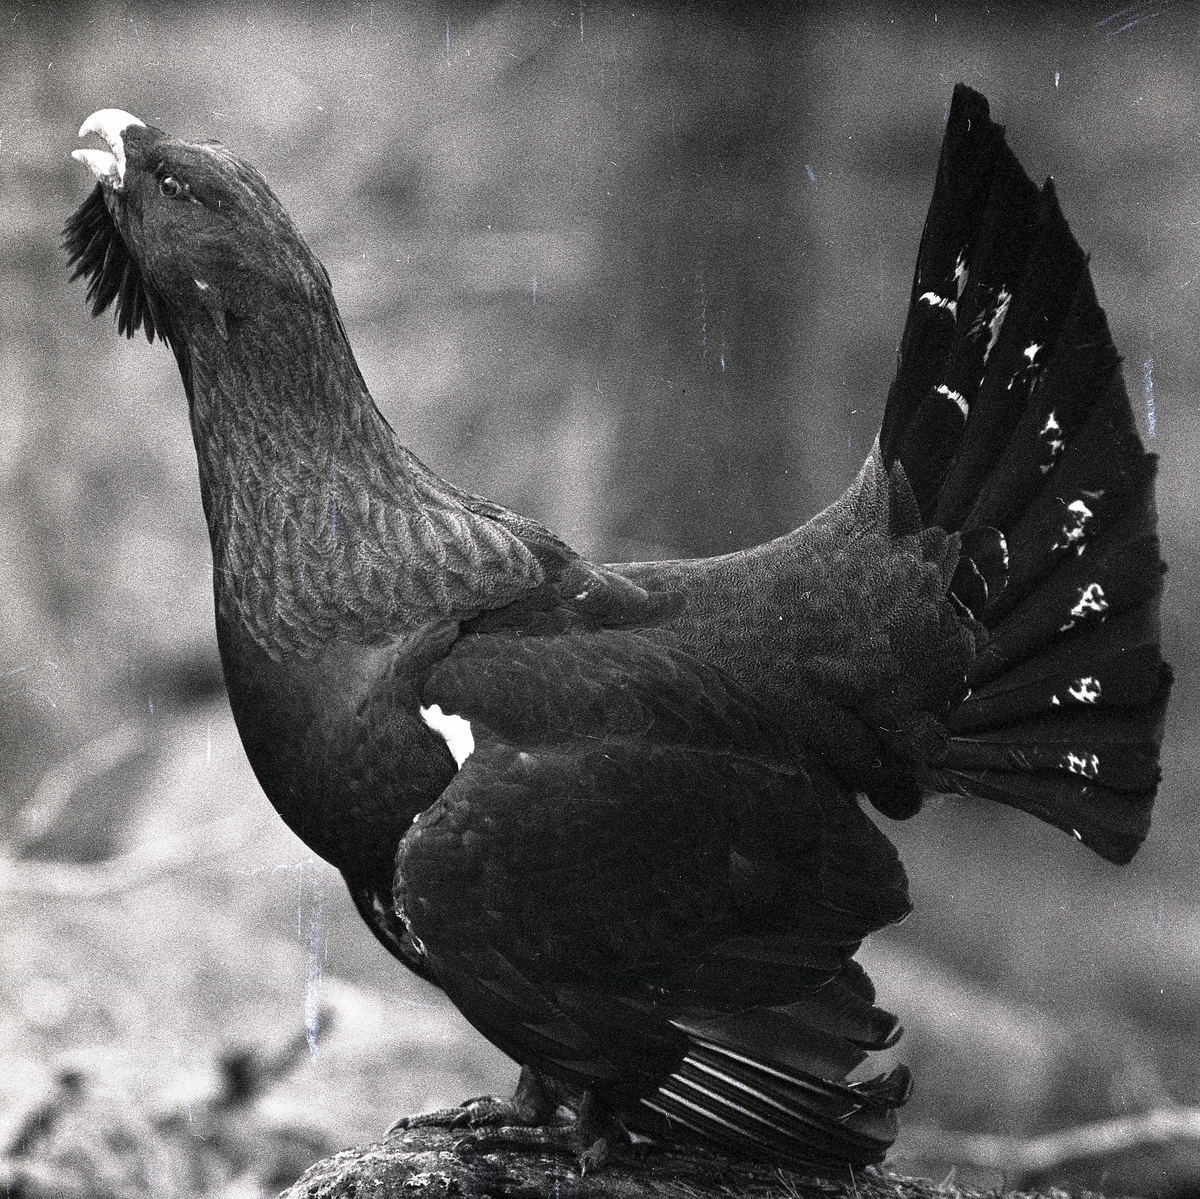 Högrest och stolt spelar en tjädertupp i Vallsta 1959. Fågeln står på en sten och visar upp sin vackra fjäderdräkt.